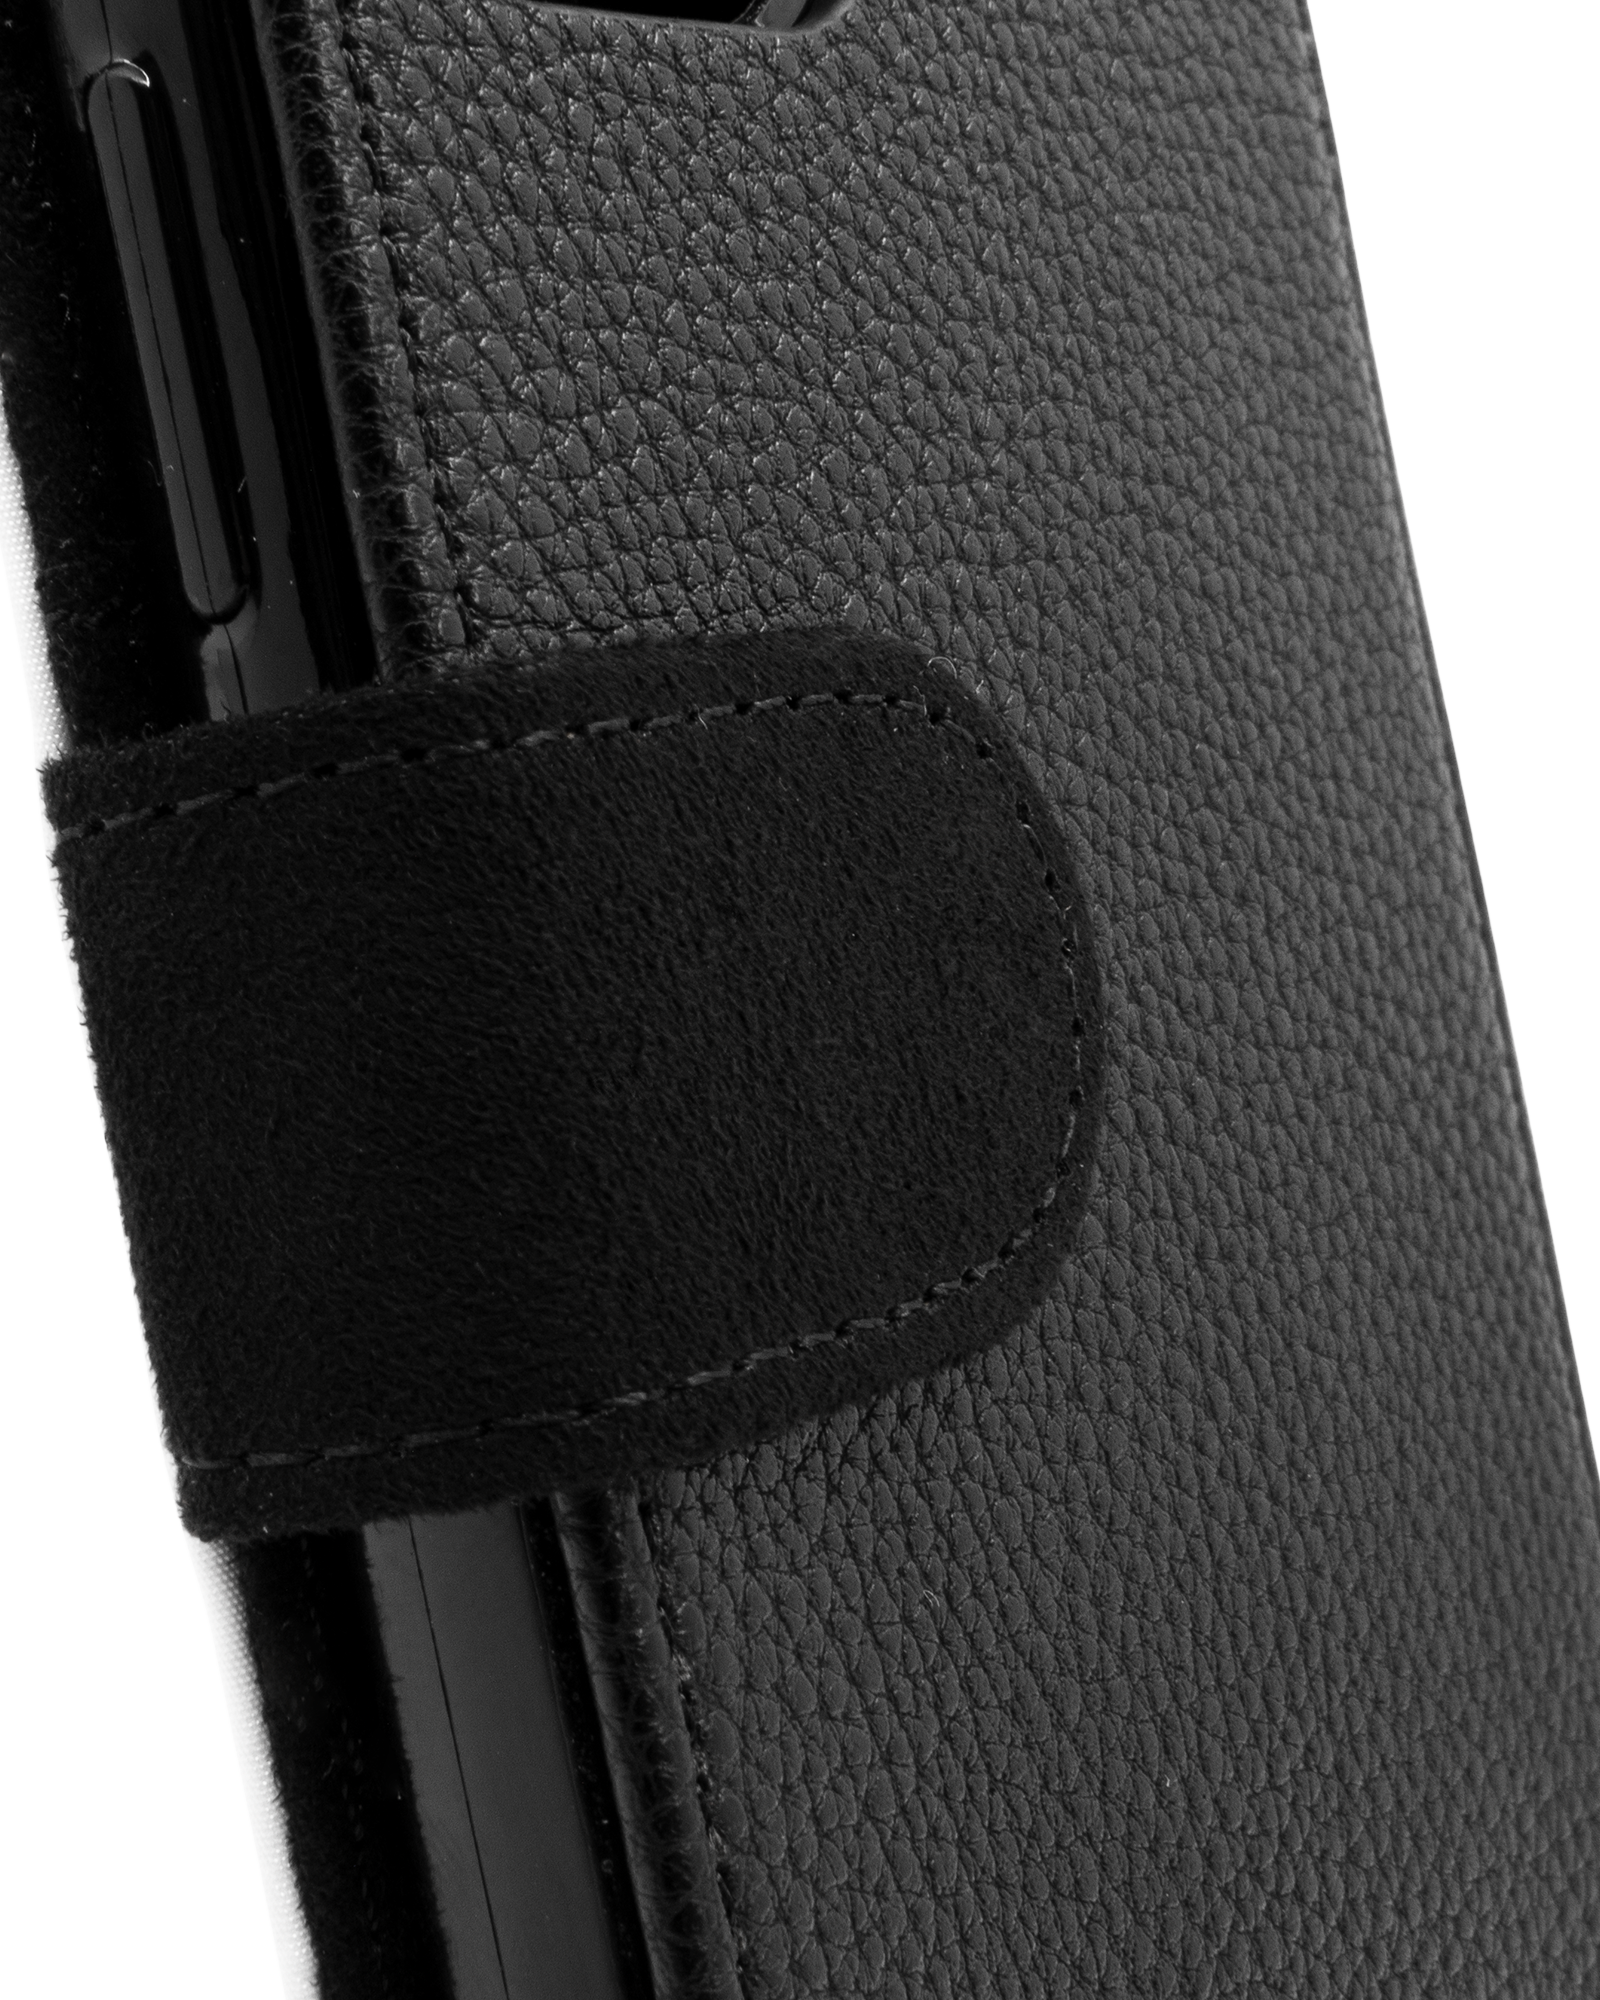 BLACK Wallet Phone Case Huawei P30 Pro